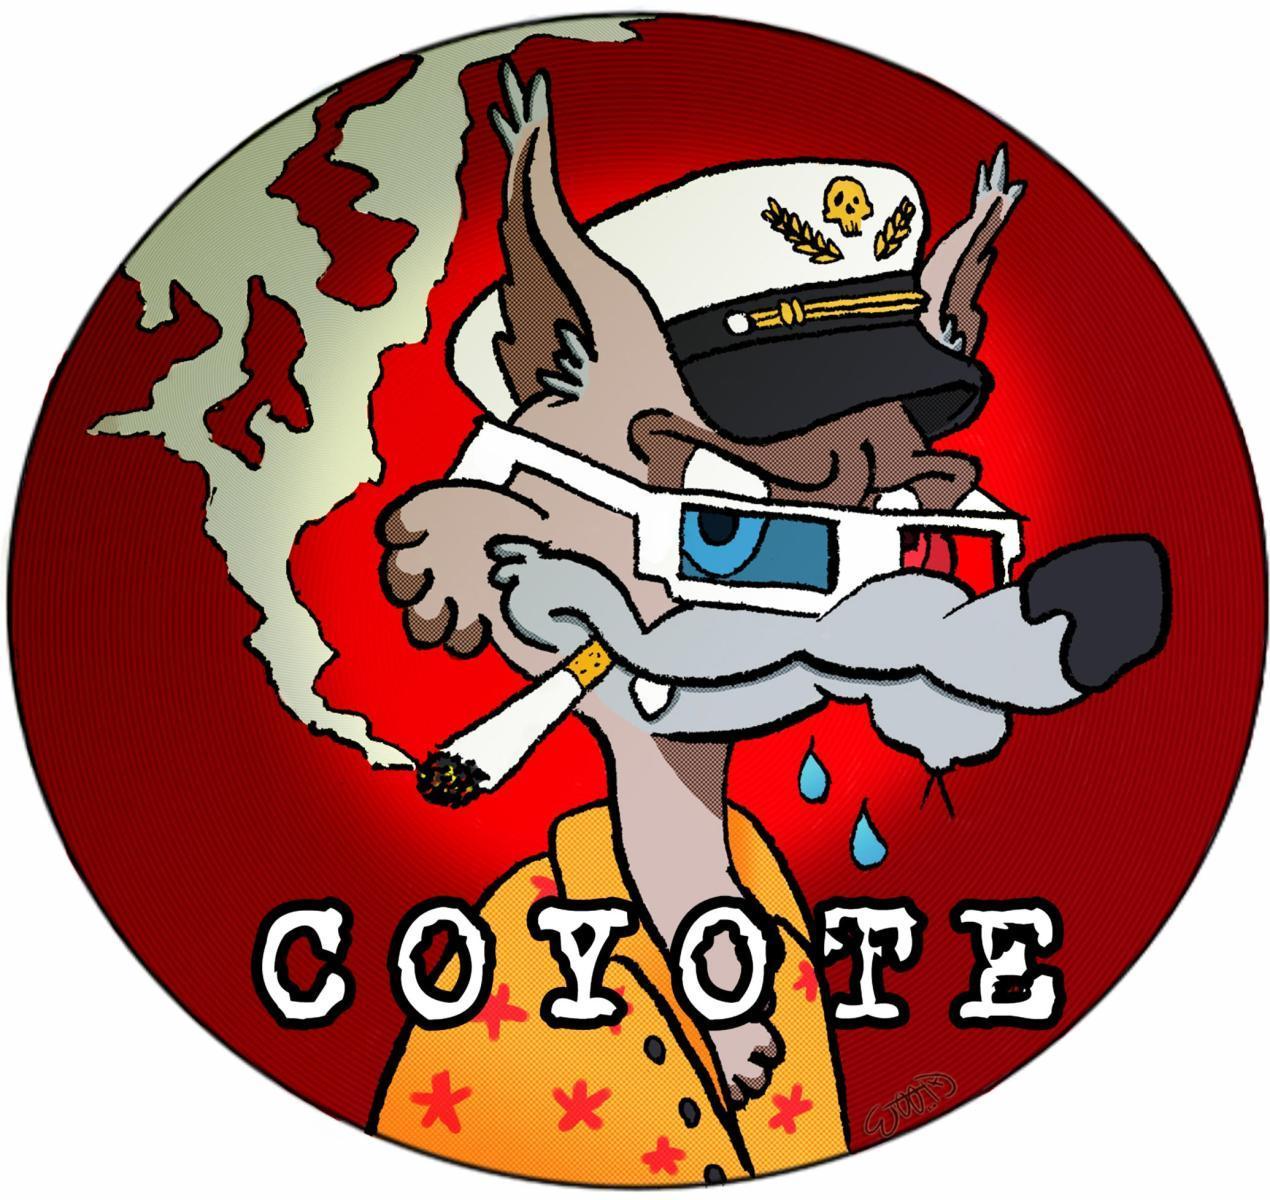 Coyote Sketch Show